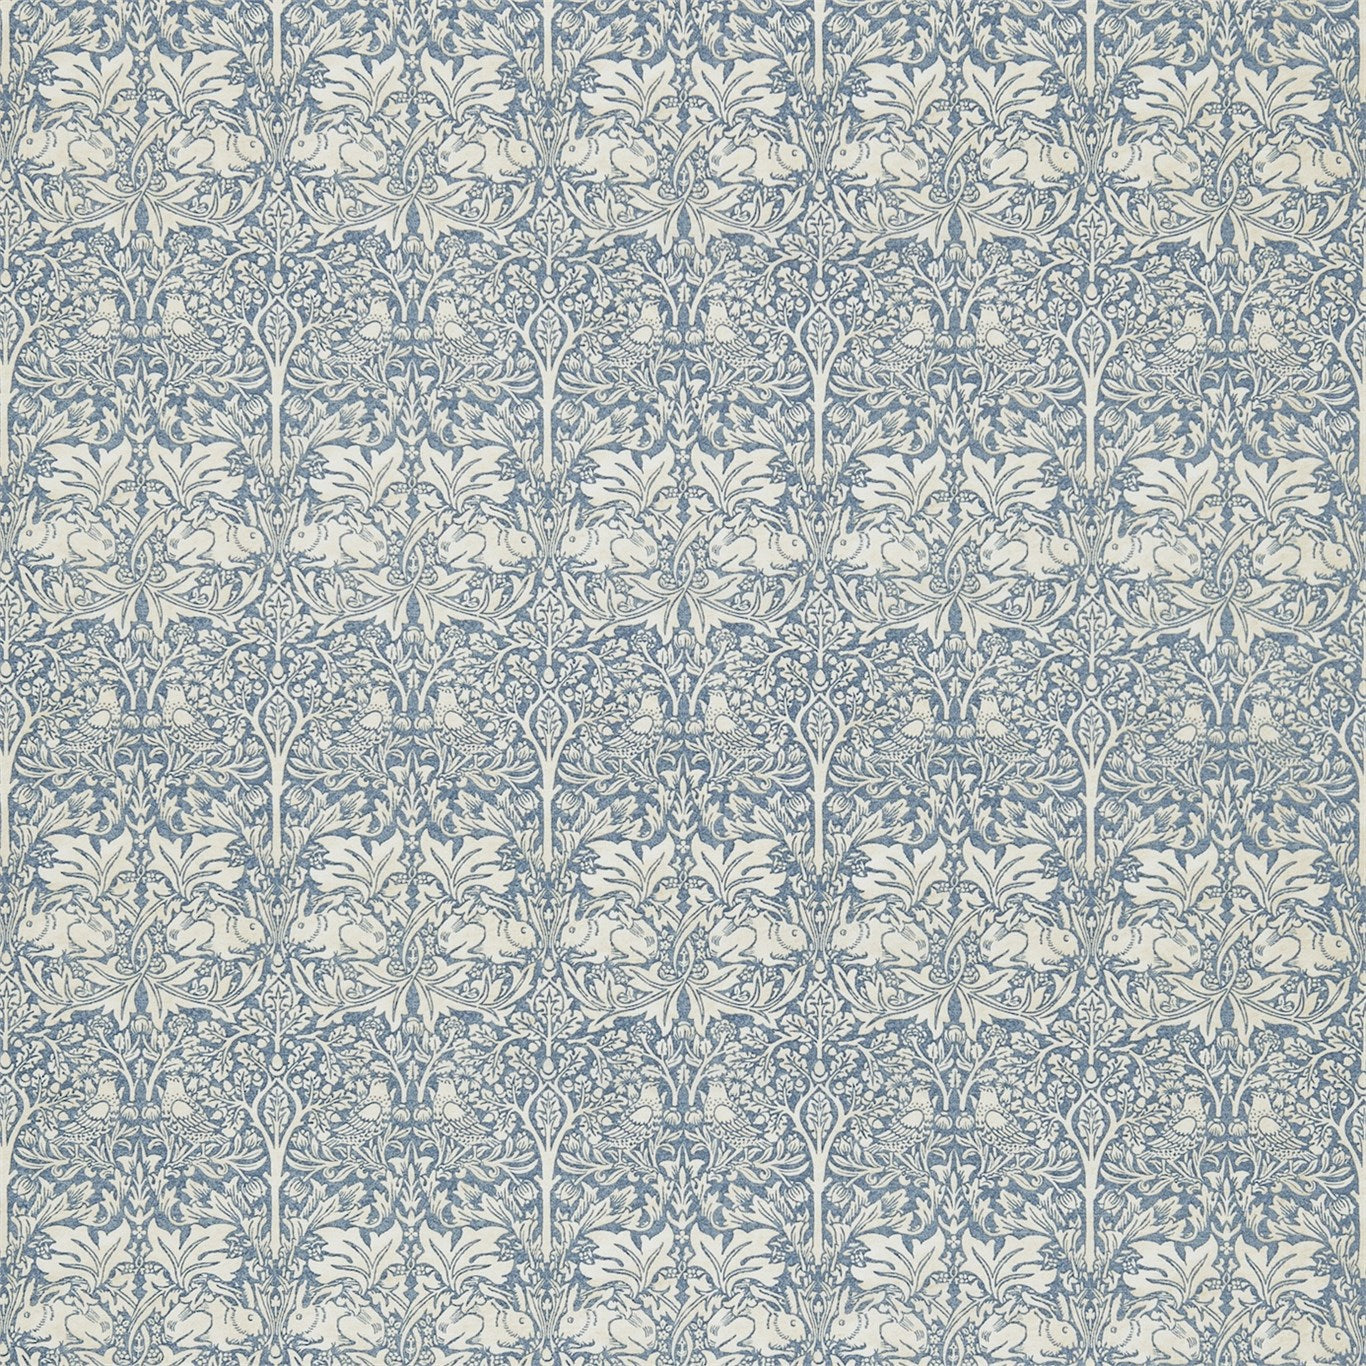 Brer Rabbit Fabric by Morris & Co. - DMFPBR202 - Slate/Vellum